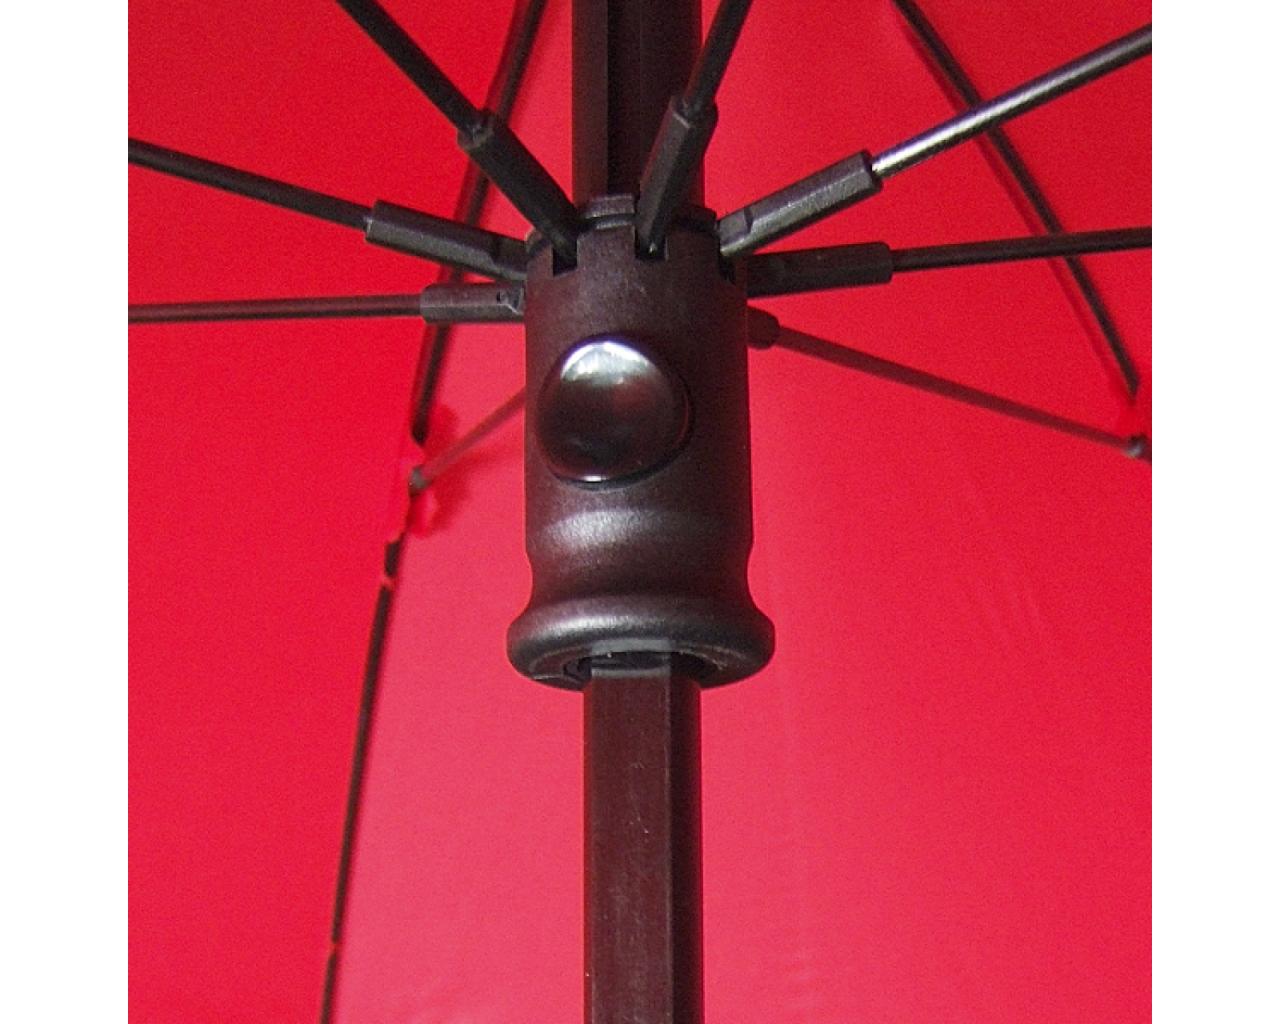 Birdiepal Euroschirm Der Outdoor Regenschirm